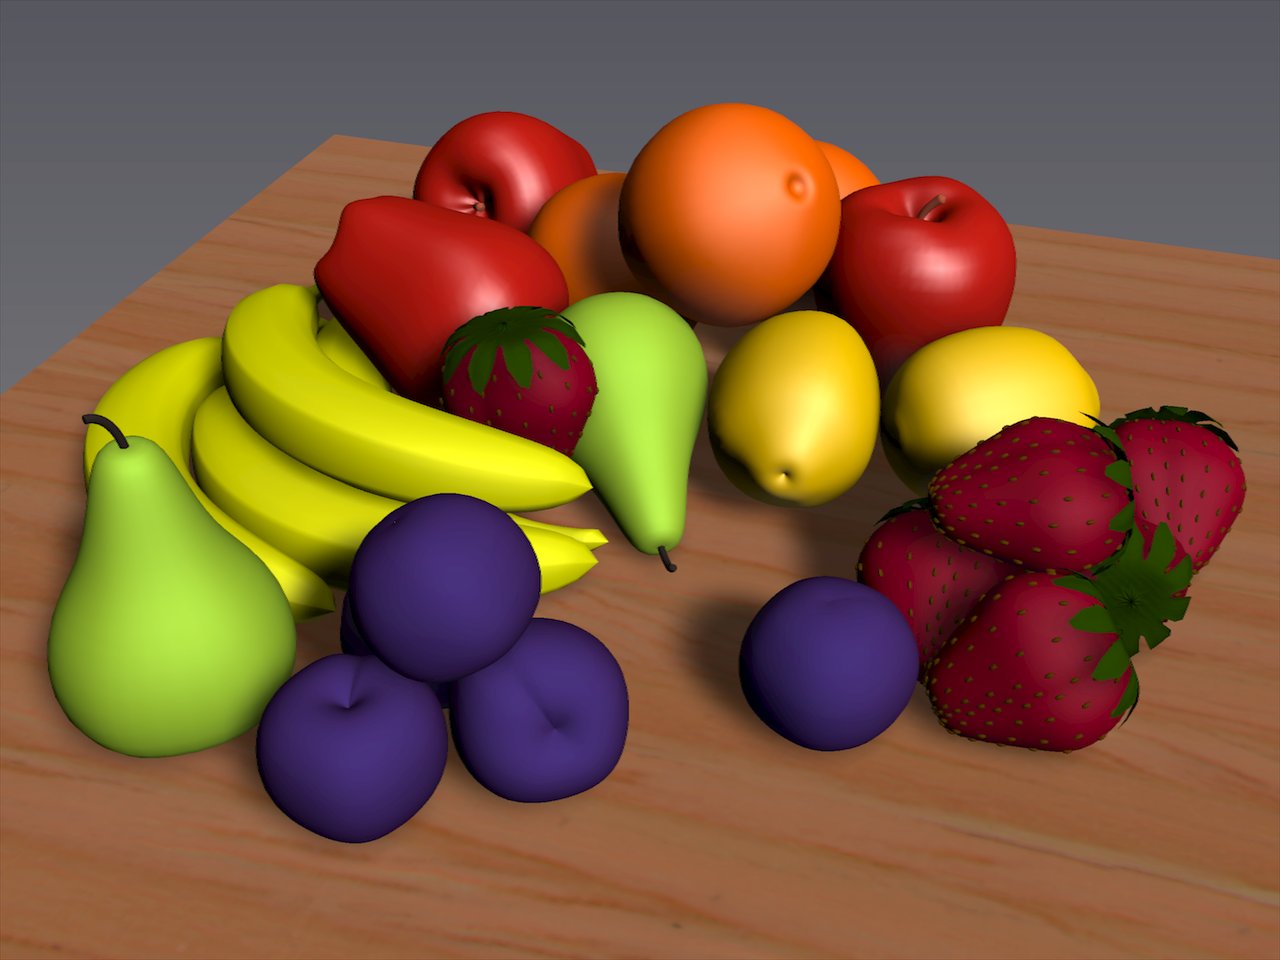 Авы блокс фрукт. Фрукты Блокс Фрут. BLOX Fruits фрукты. Фрукты анимация. 3д предметы одного цвета.